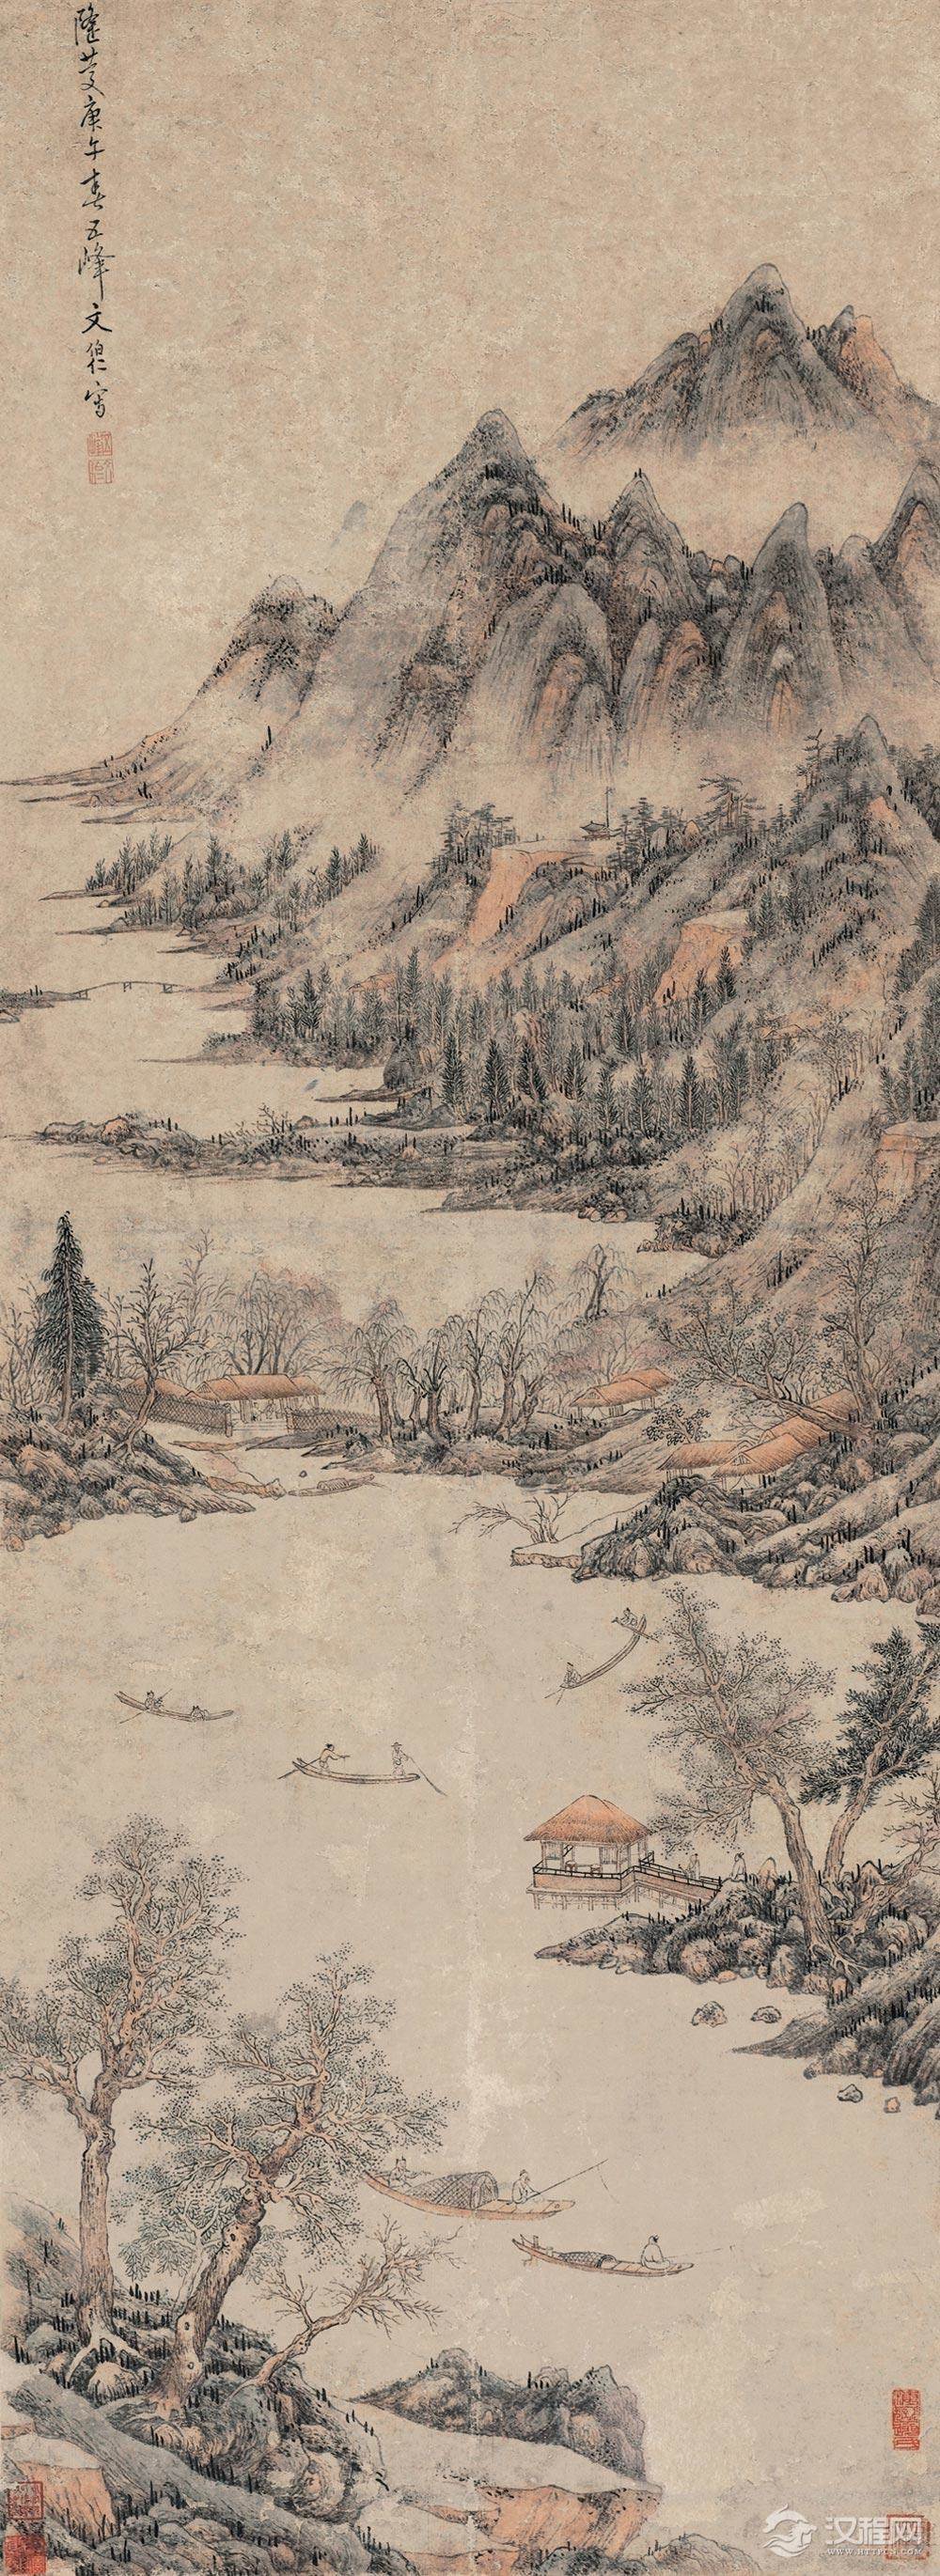 北京故宫典藏绘画